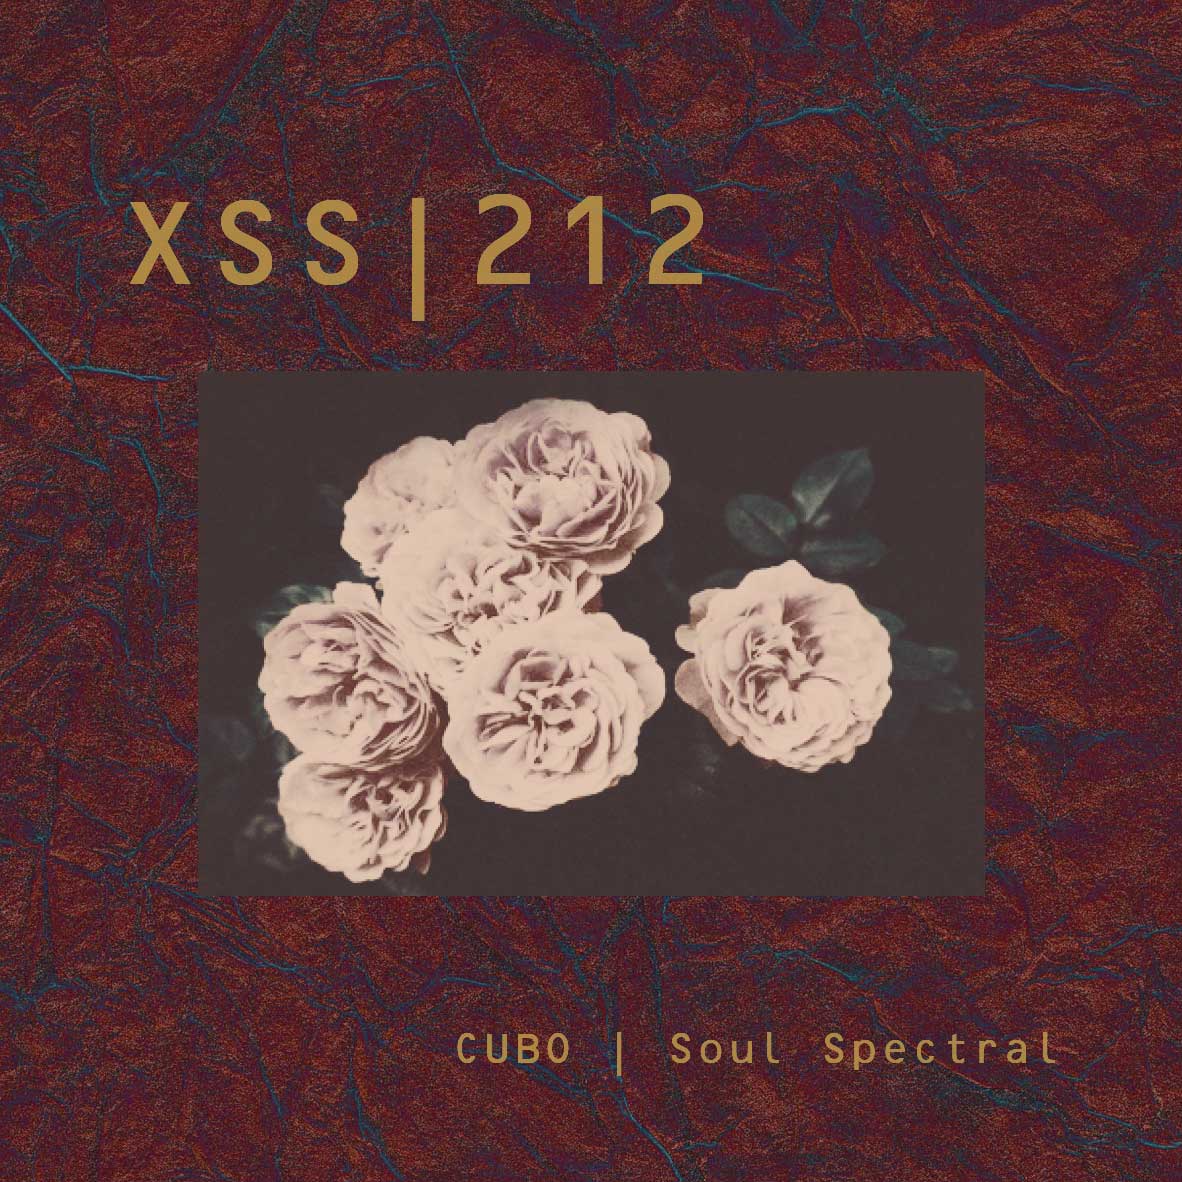 XSS212 | Cubo | Soul Spectral